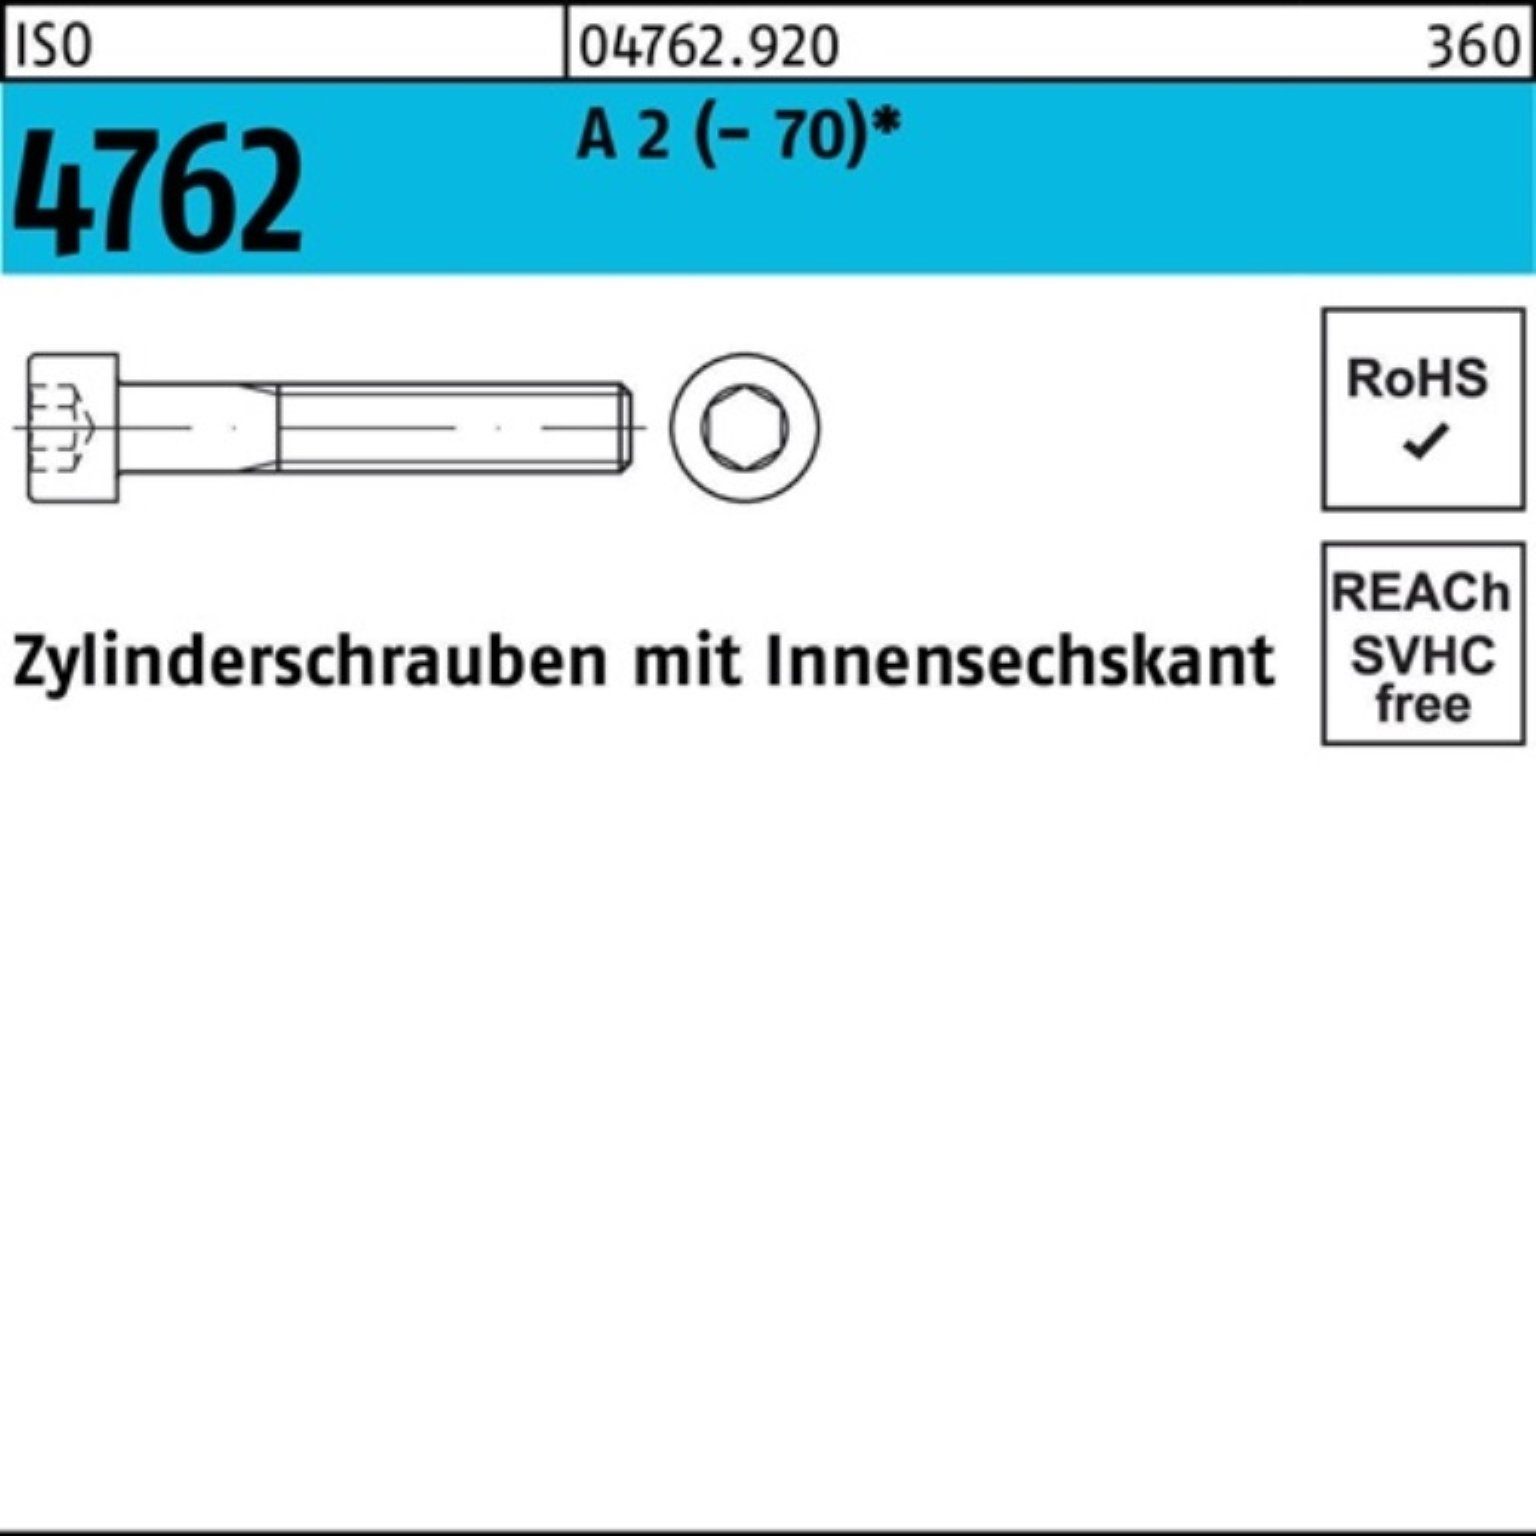 70 50 Reyher (70) Zylinderschraube S Innen-6kt 100er 4762 ISO Pack 2 Zylinderschraube A M14x